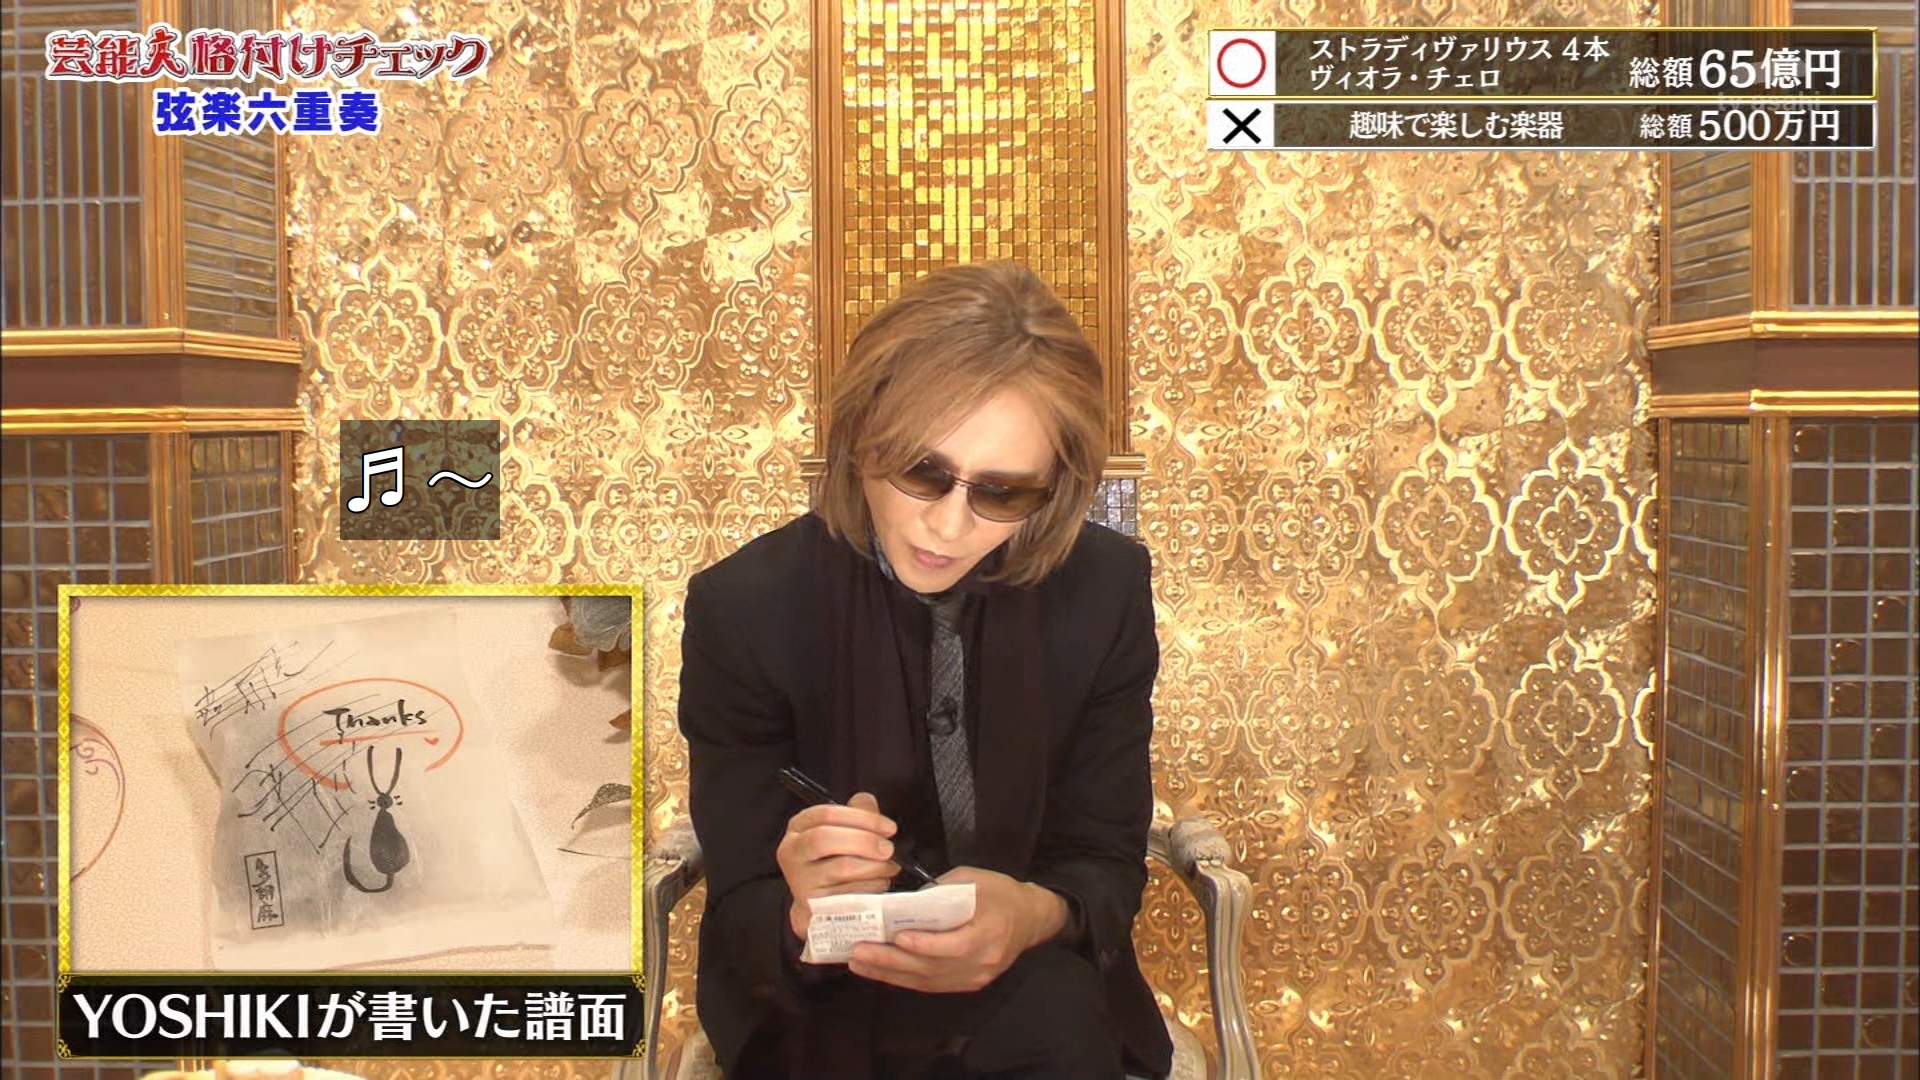 【格付け2022】YOSHIKIが食べたお菓子・おかき・クッキー・プリンのメーカーはどこか特定【芸能人格付けチェック】